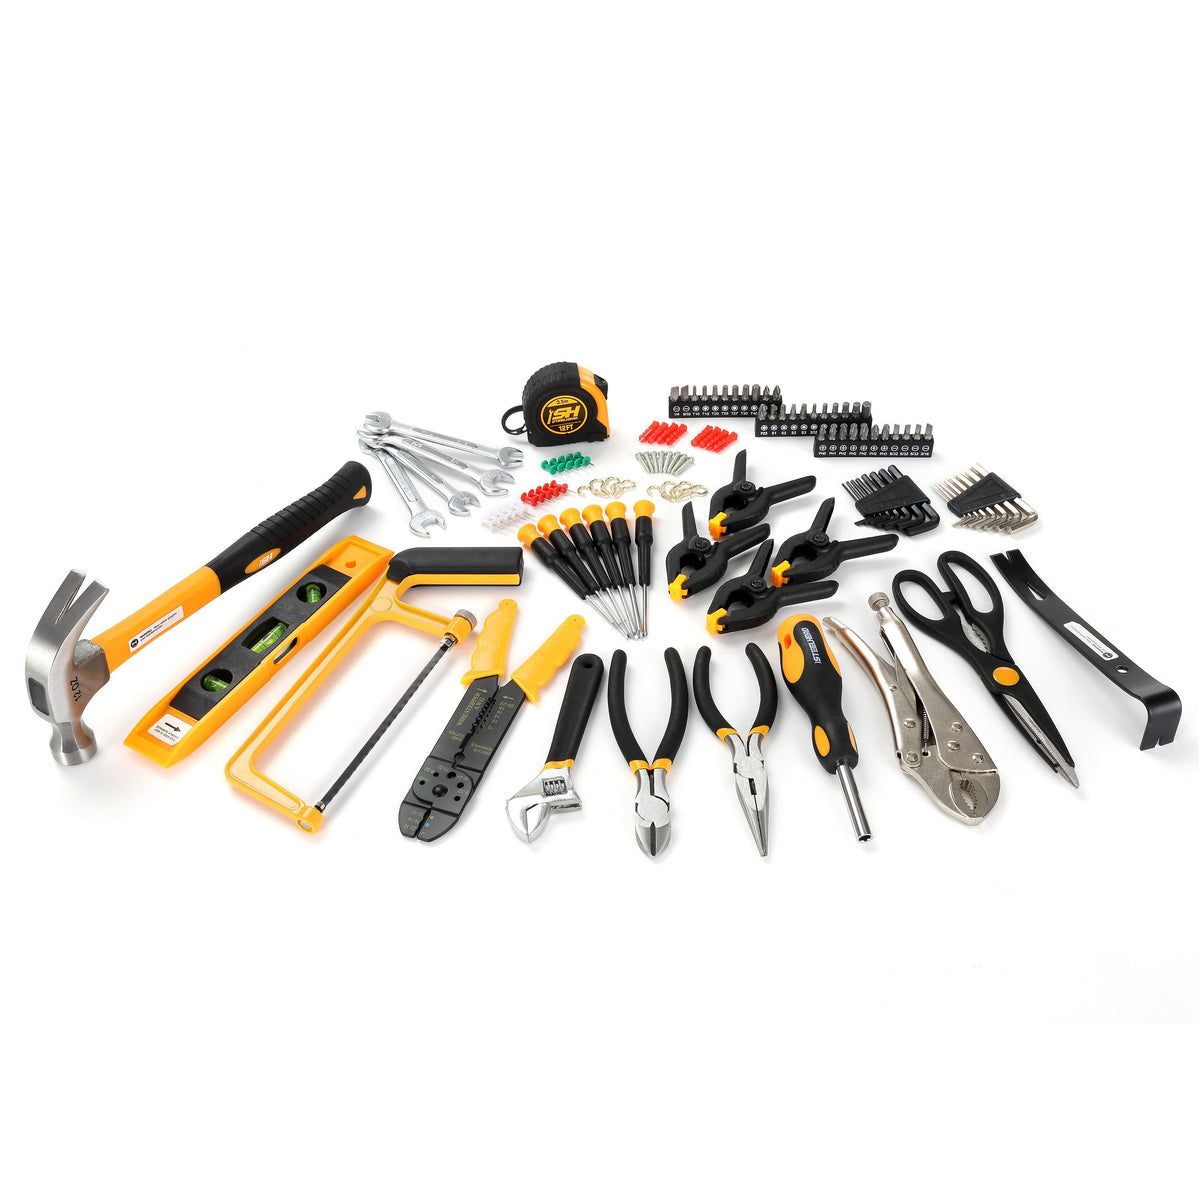 Super Grip Tool Tray (4-Piece Set) – MOTORHEAD & STEELHEAD Tools